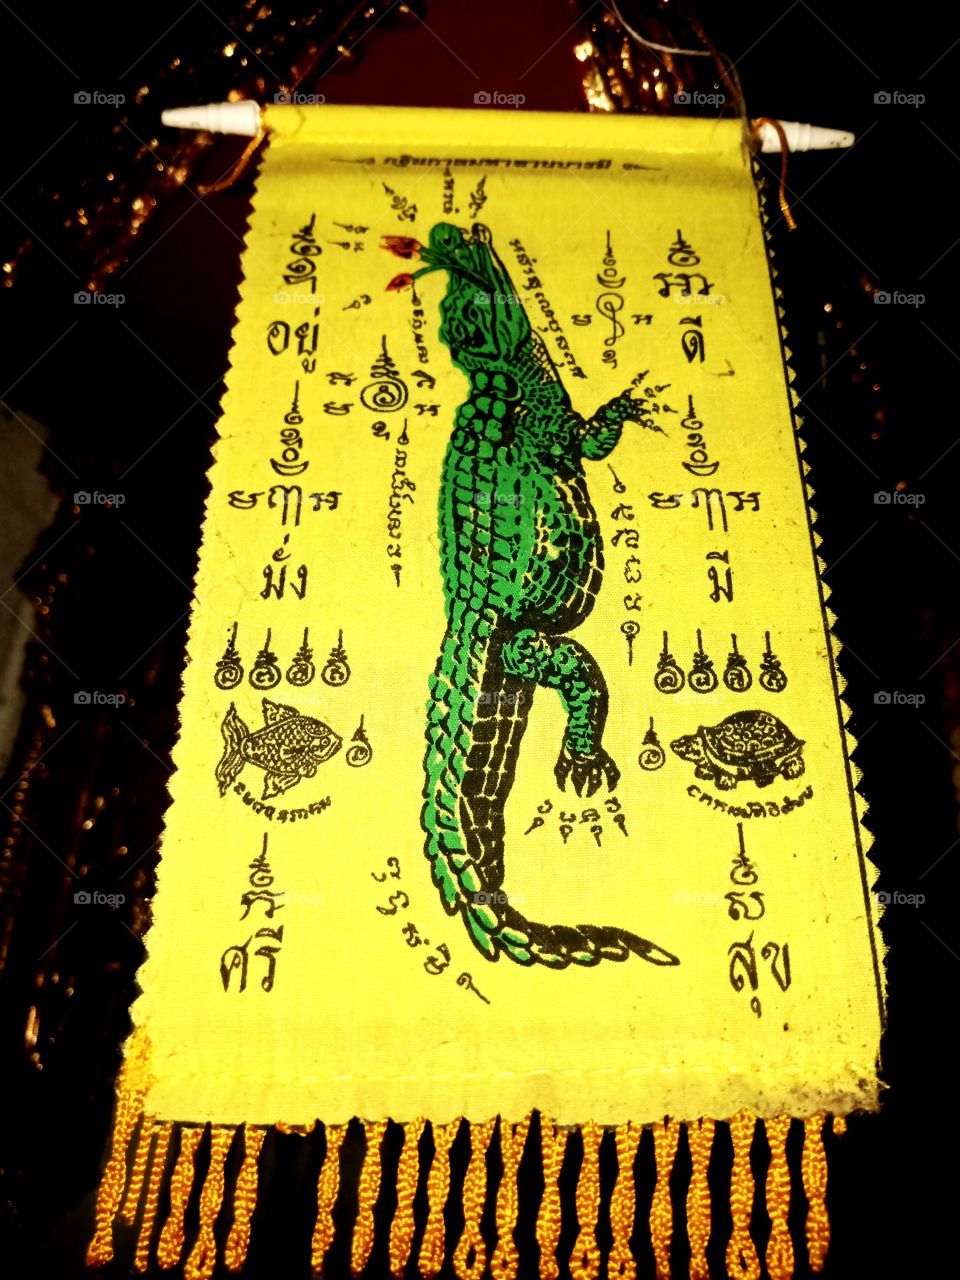 crocodile amulet fetish